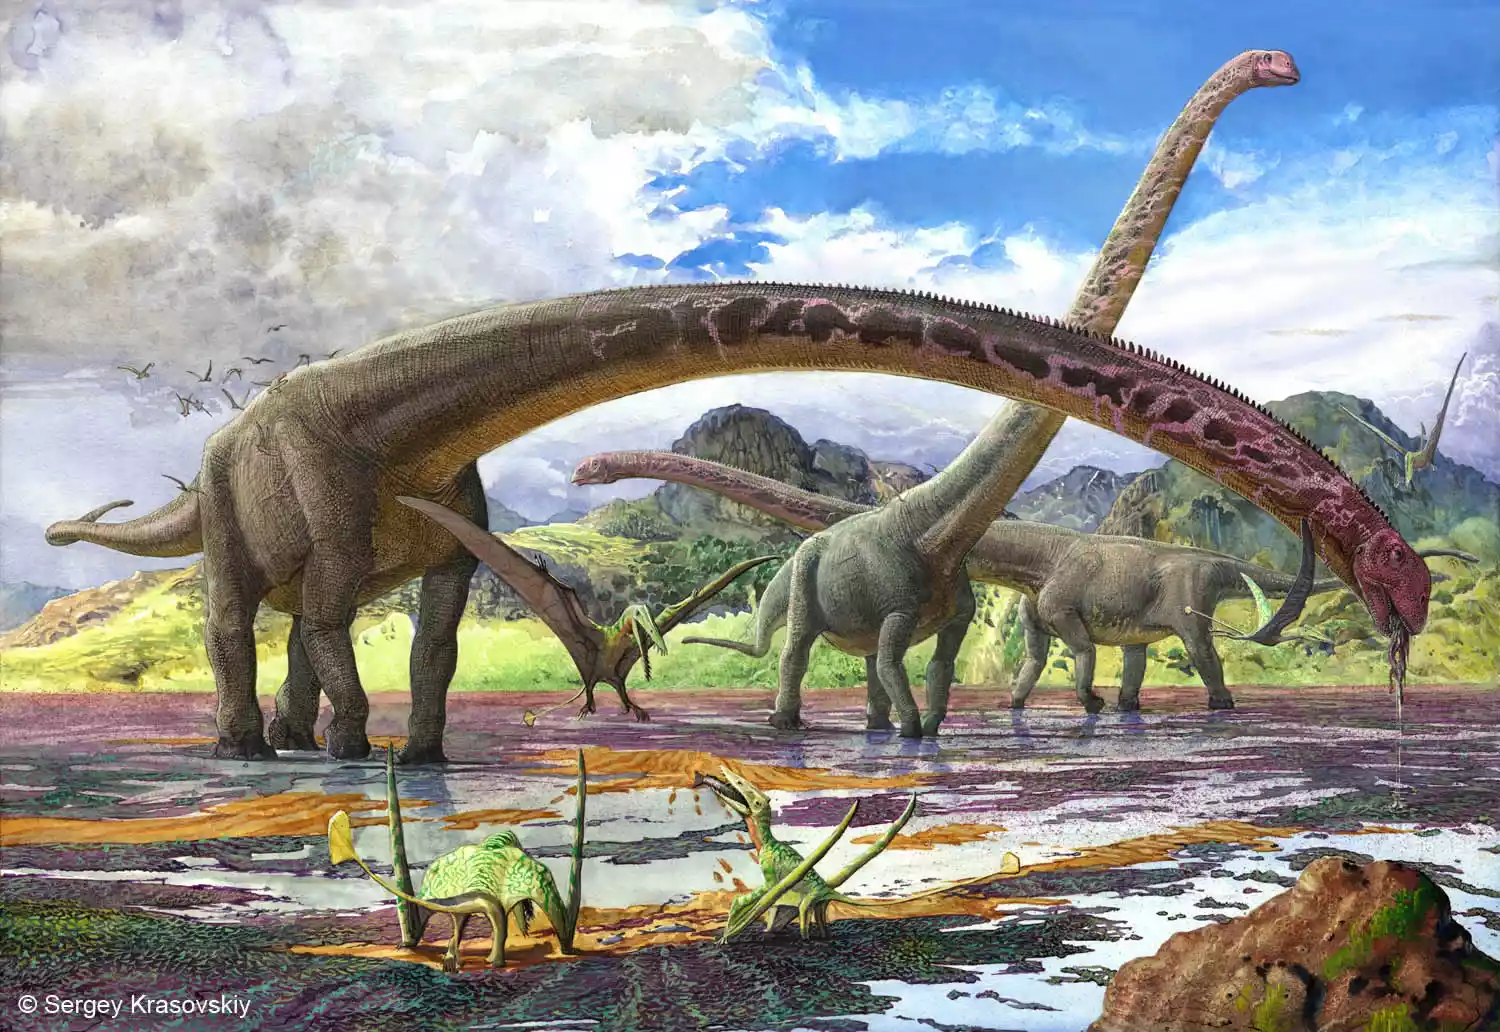 Ilustracija Mamenchisaurusa. Zasluge: Sergey Krasovskiy.